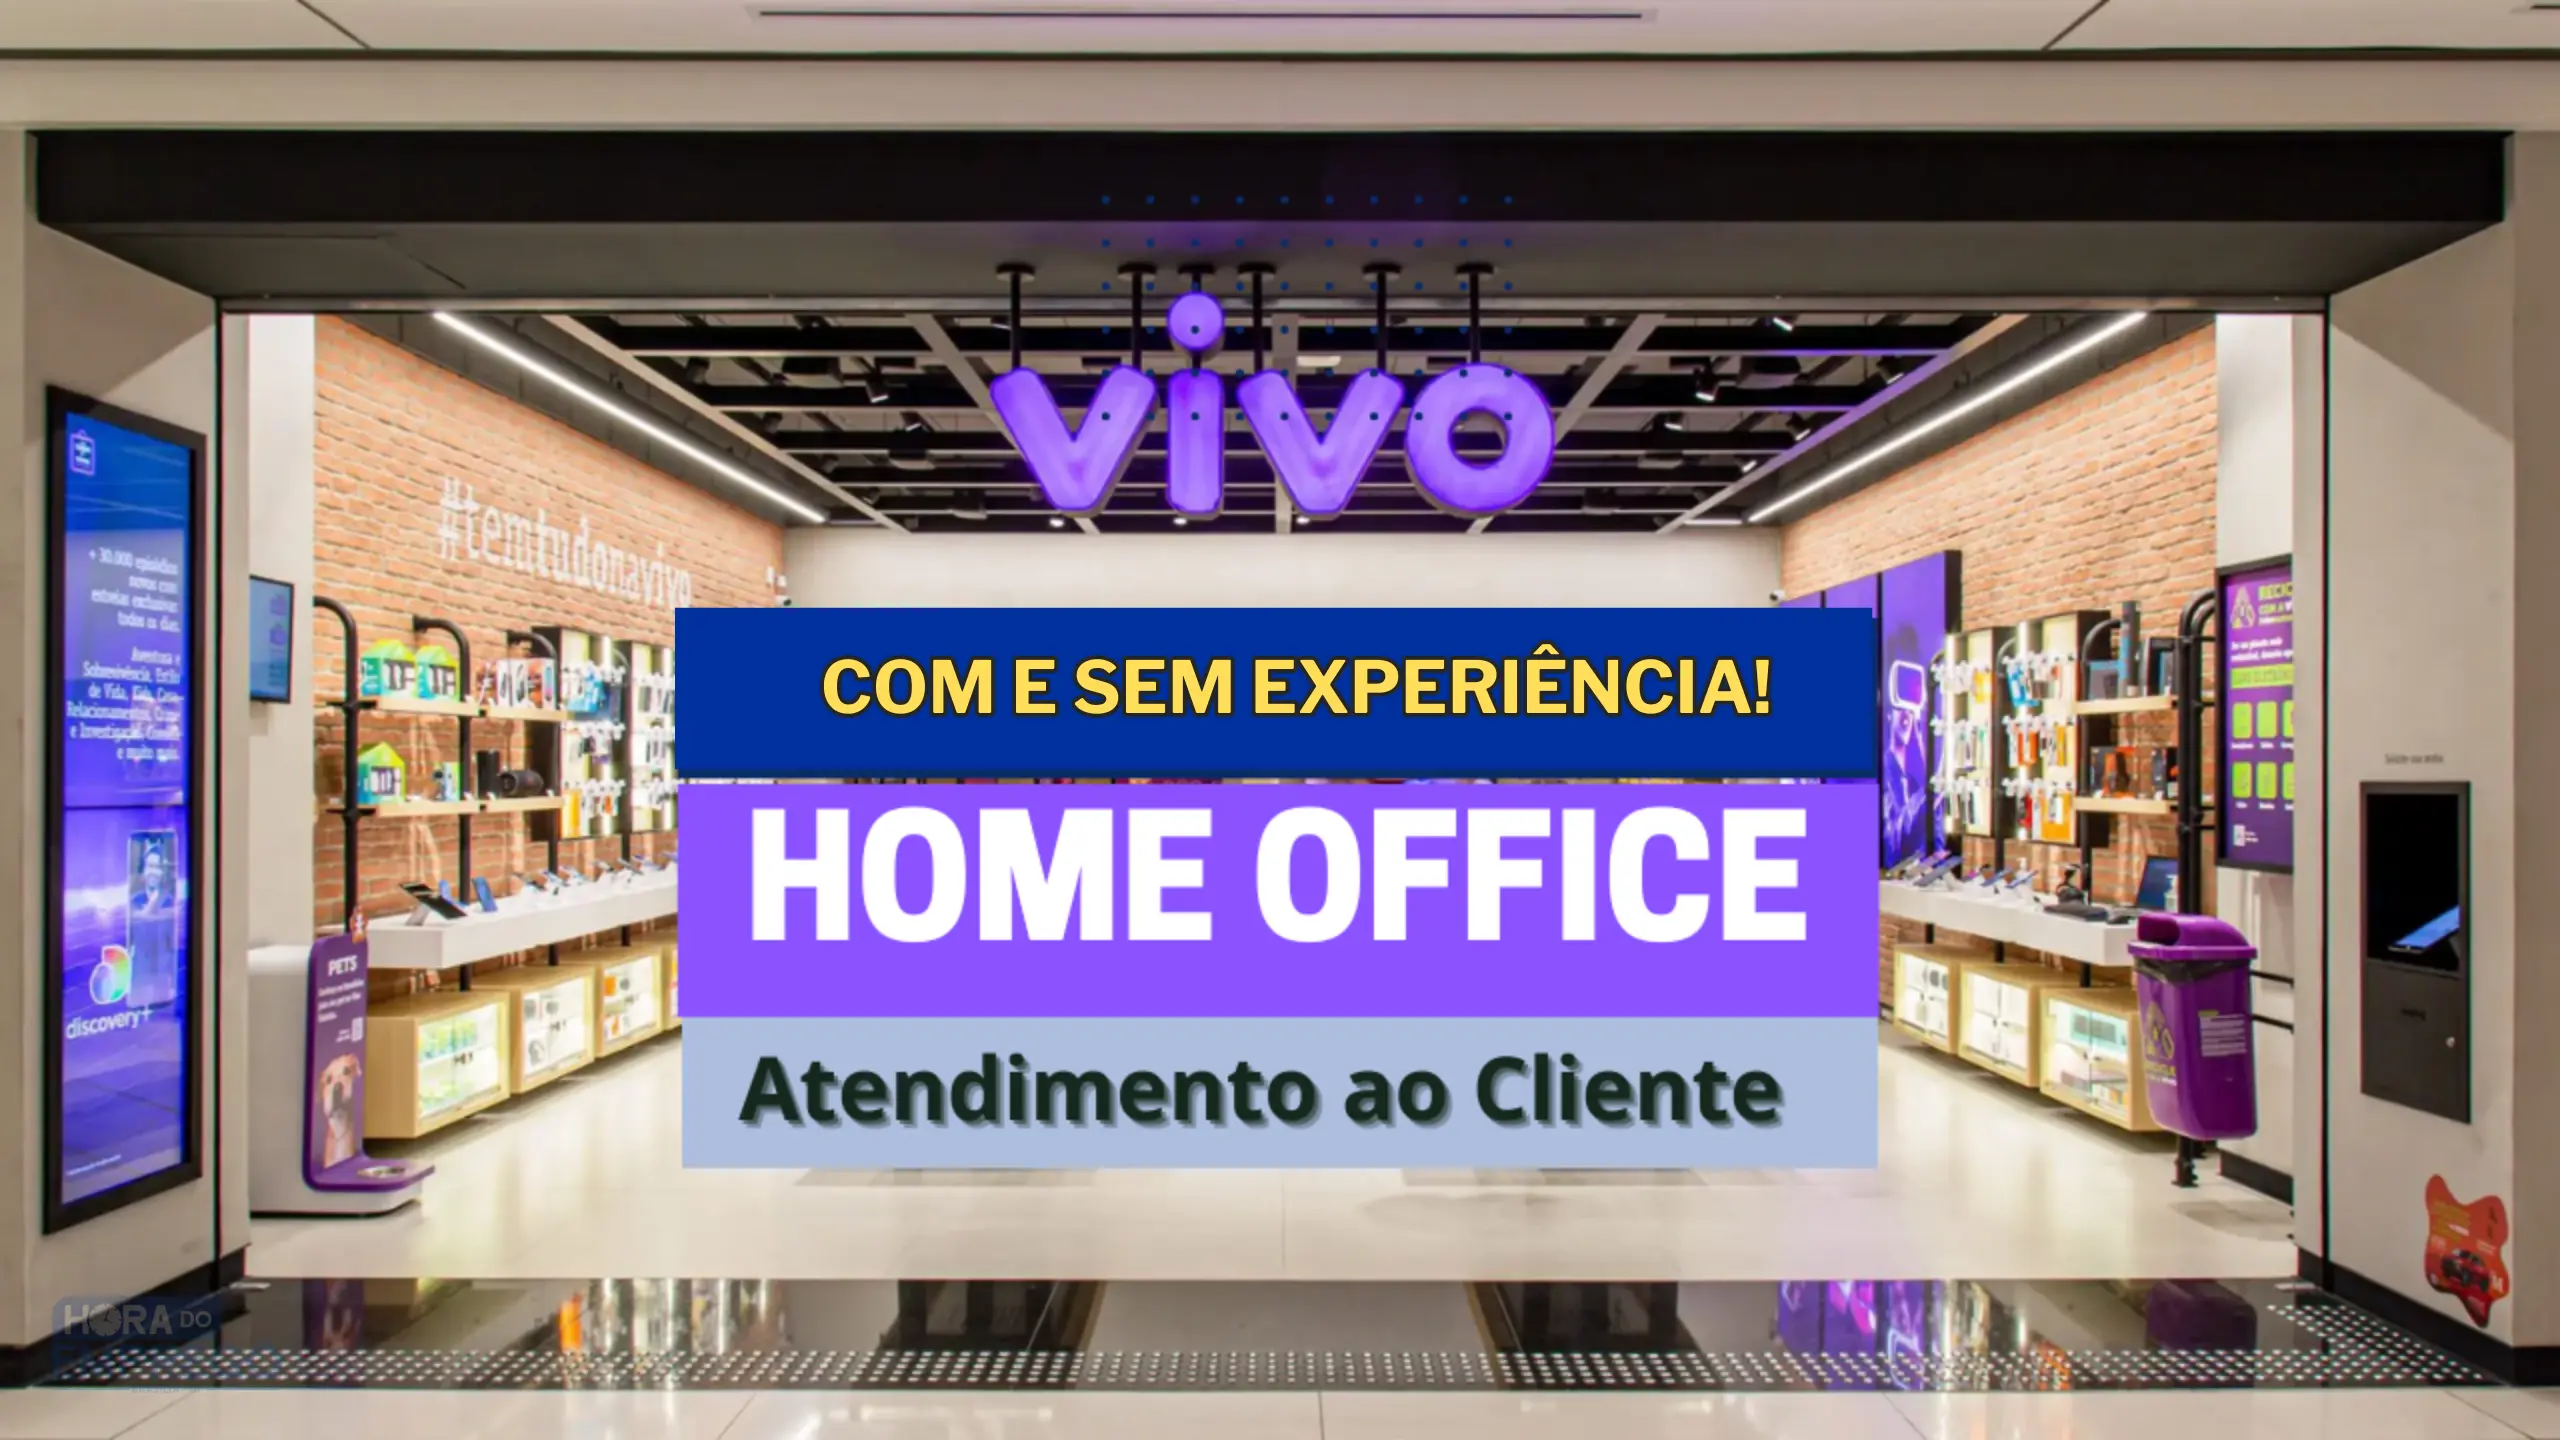 Vivo anuncia vagas HOME OFFICE para Atendimento ao Cliente e oferece até auxílio para ajudar nas despesas com escola, creche ou babá.